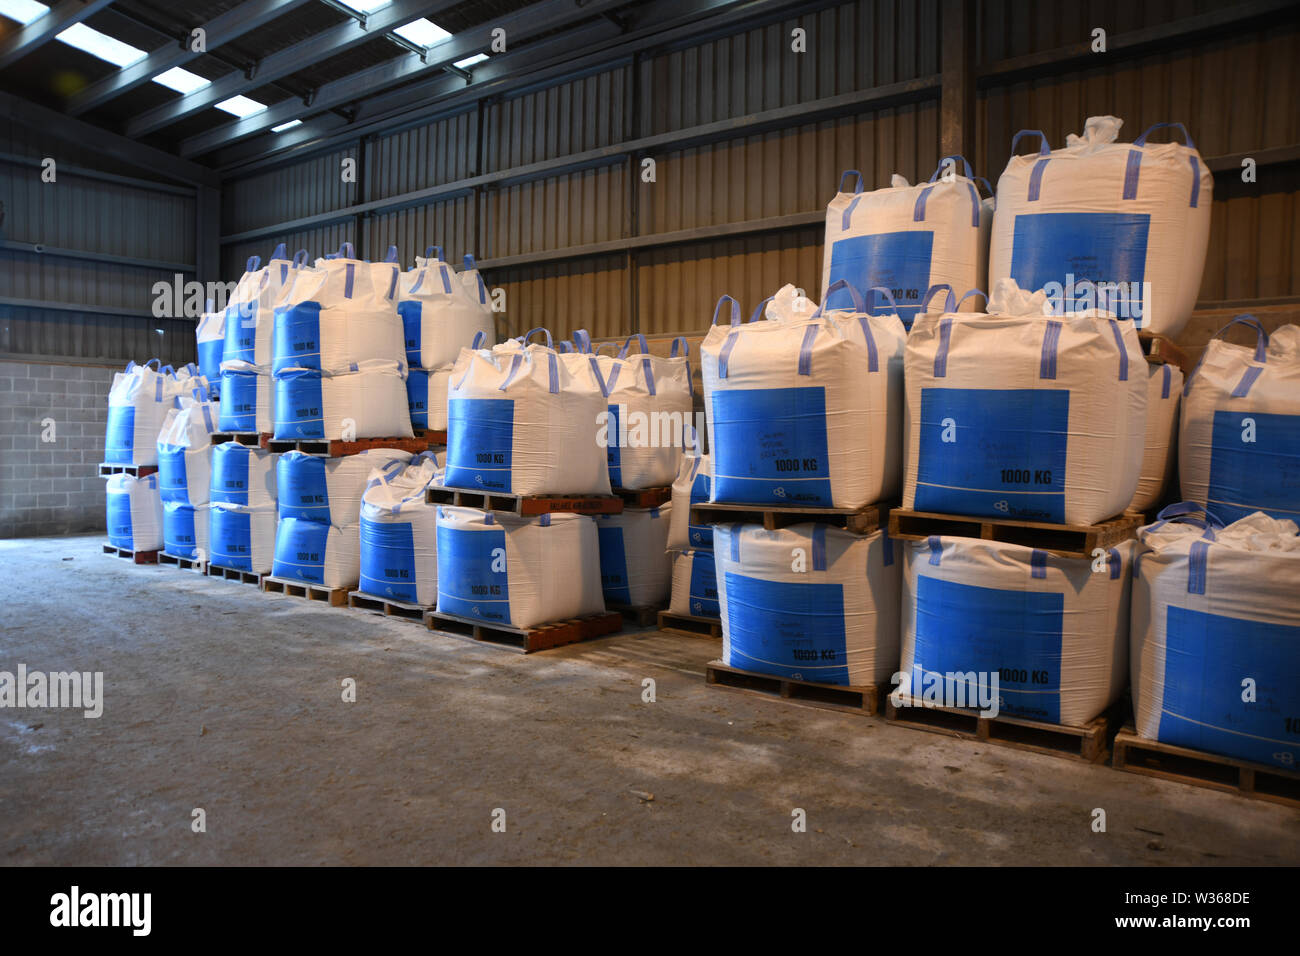 CHRISTCHURCH, NEW ZEALAND, DECEMBER 12, 2018: Several cubic metre bags of bulk fertiliser await shipment at a factory. Stock Photo